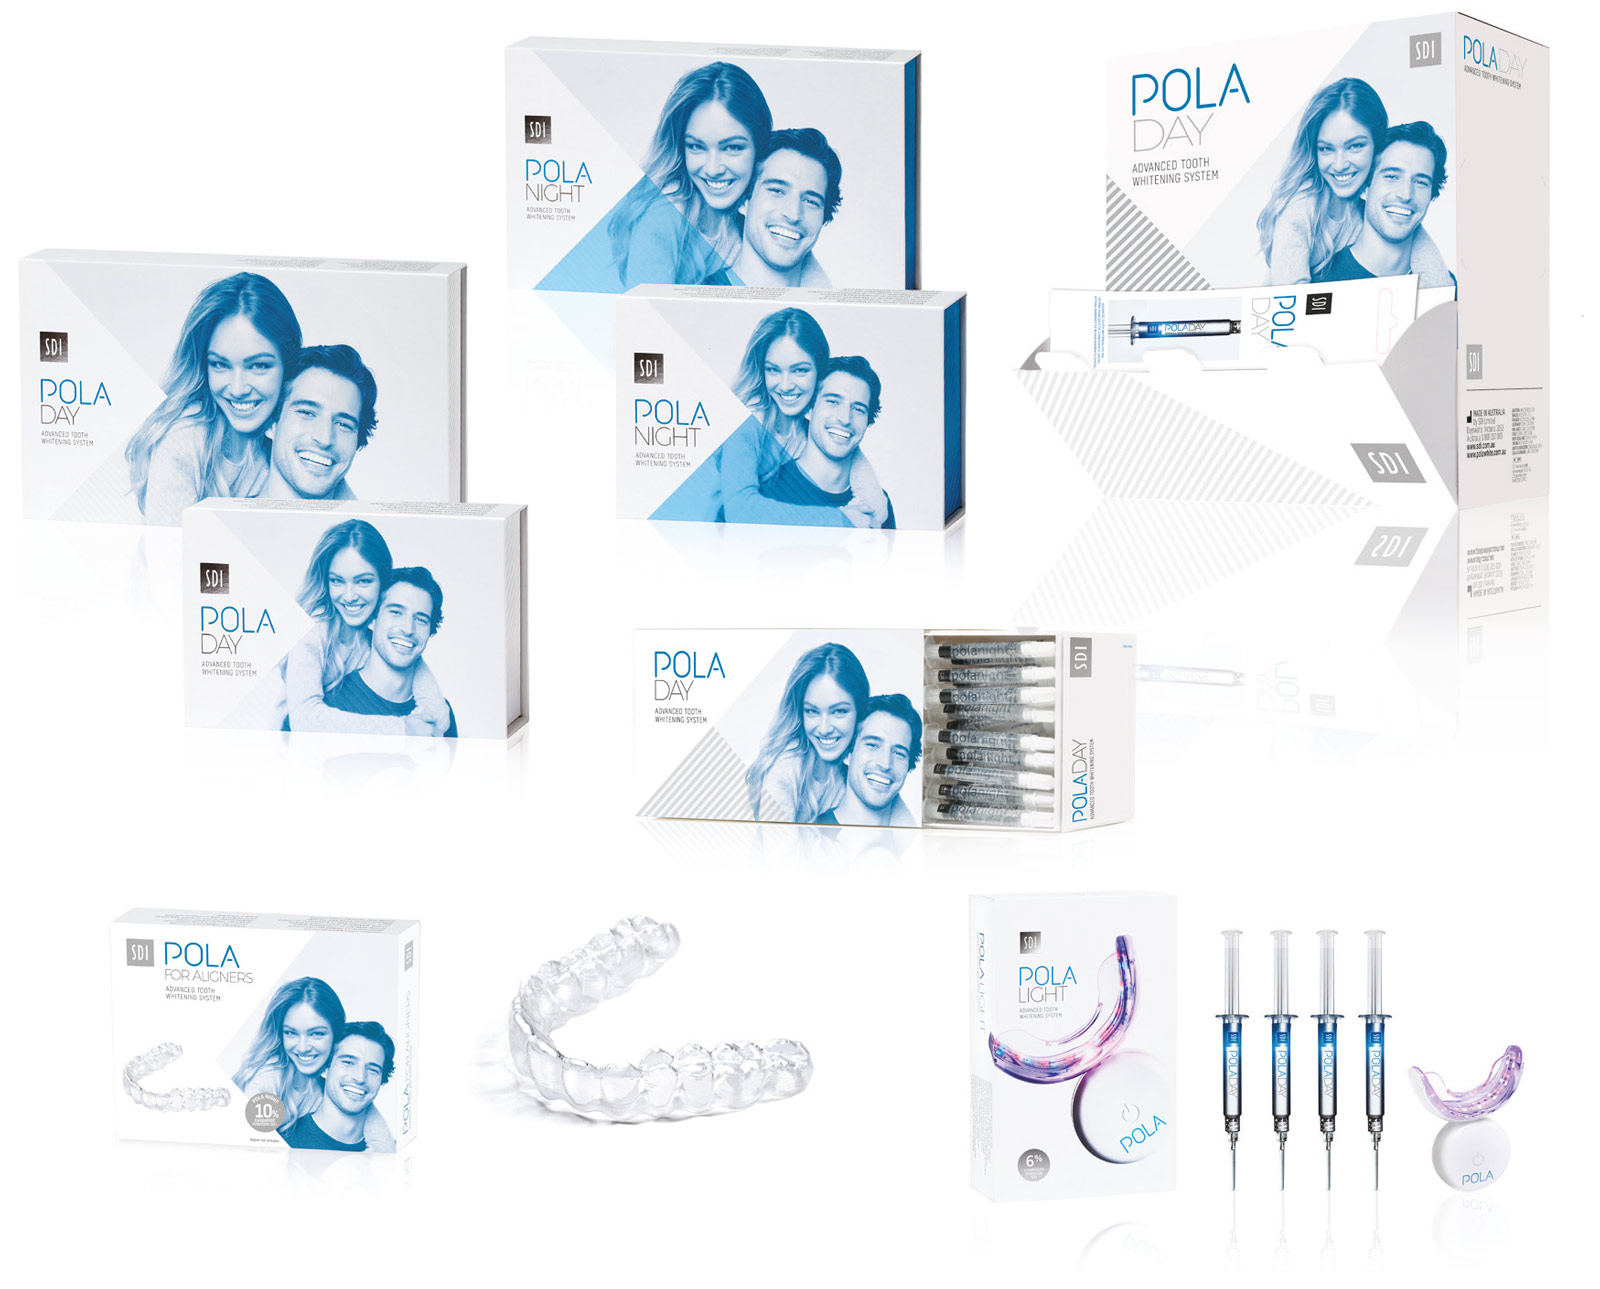 SDI POLA all kit offers